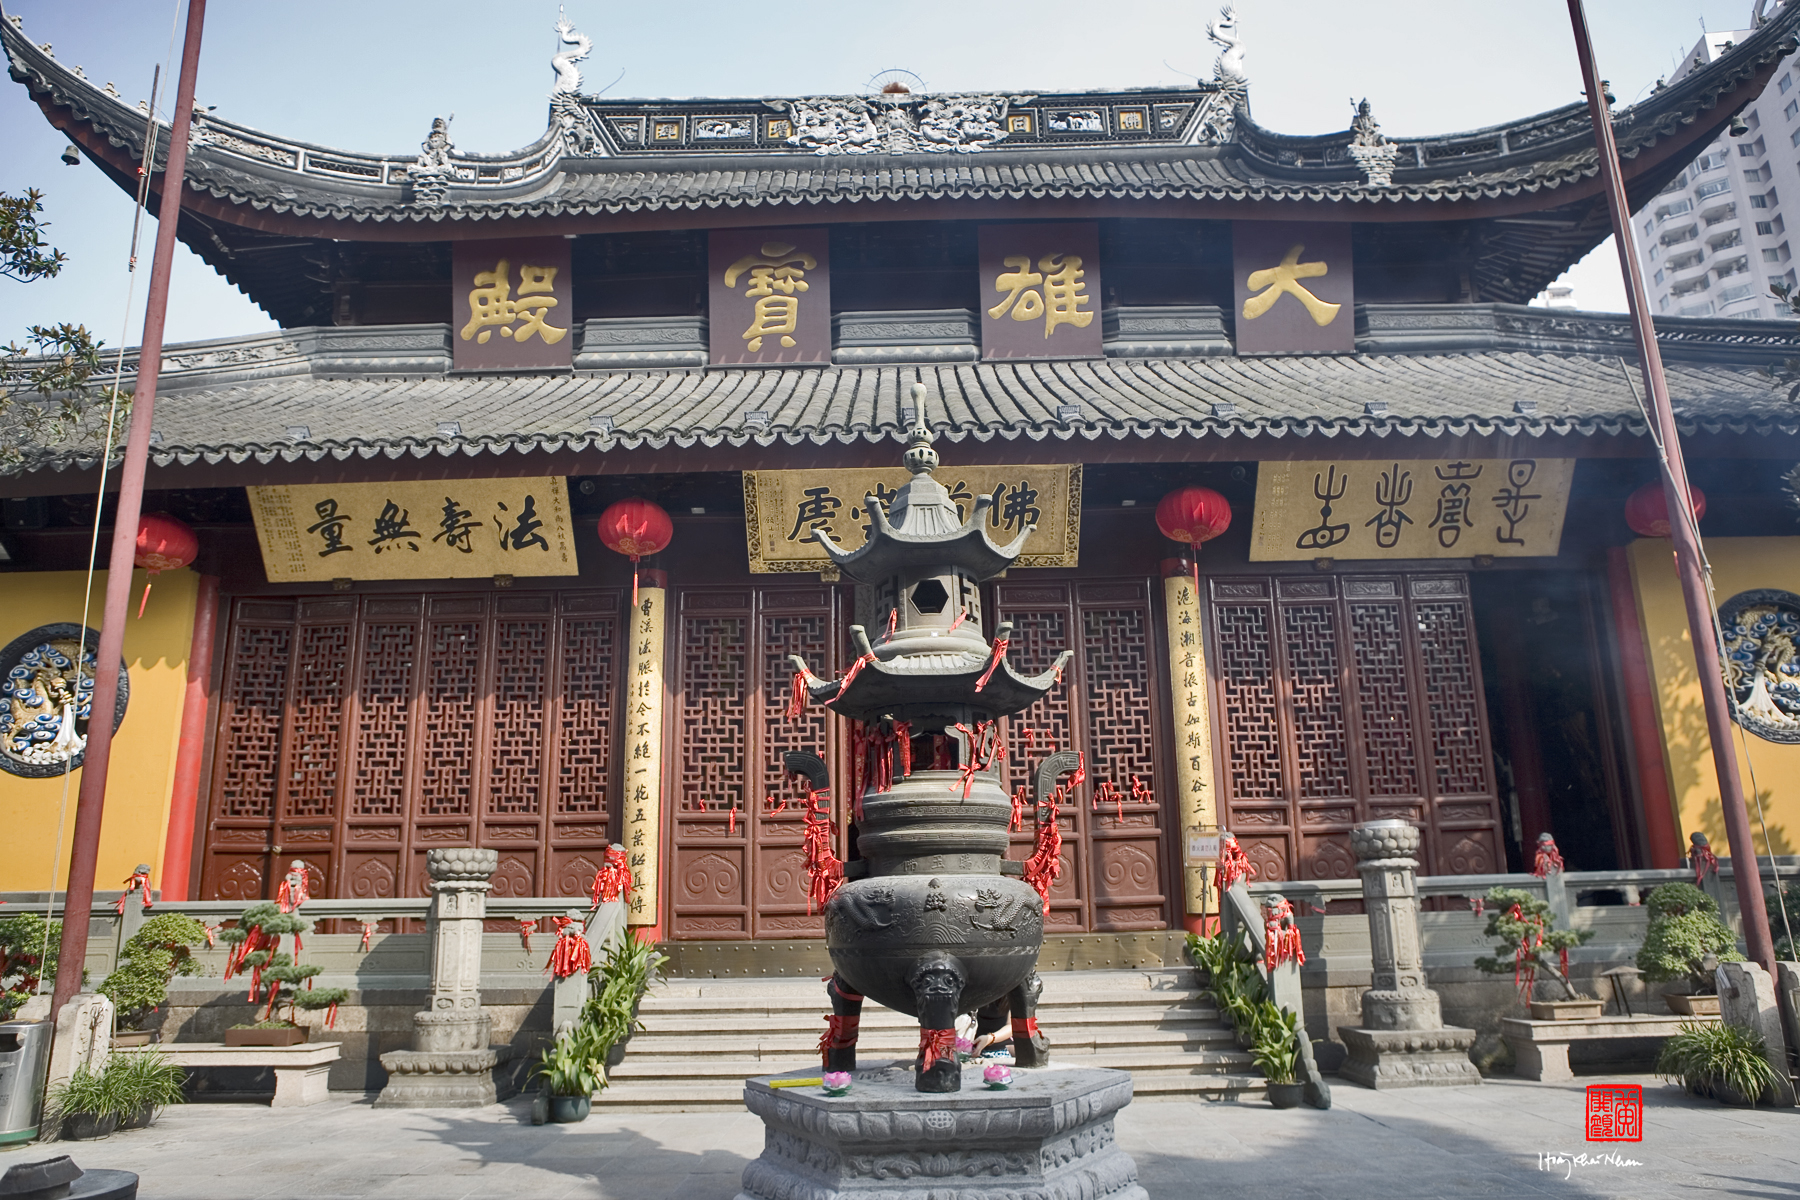 Kuil yang didirikan pada tahun 1882 ini adalah salah satu lokasi wisata Shanghai yang tak boleh anda lewatkan Kuil Jade Buddha Temple merupakan tempat